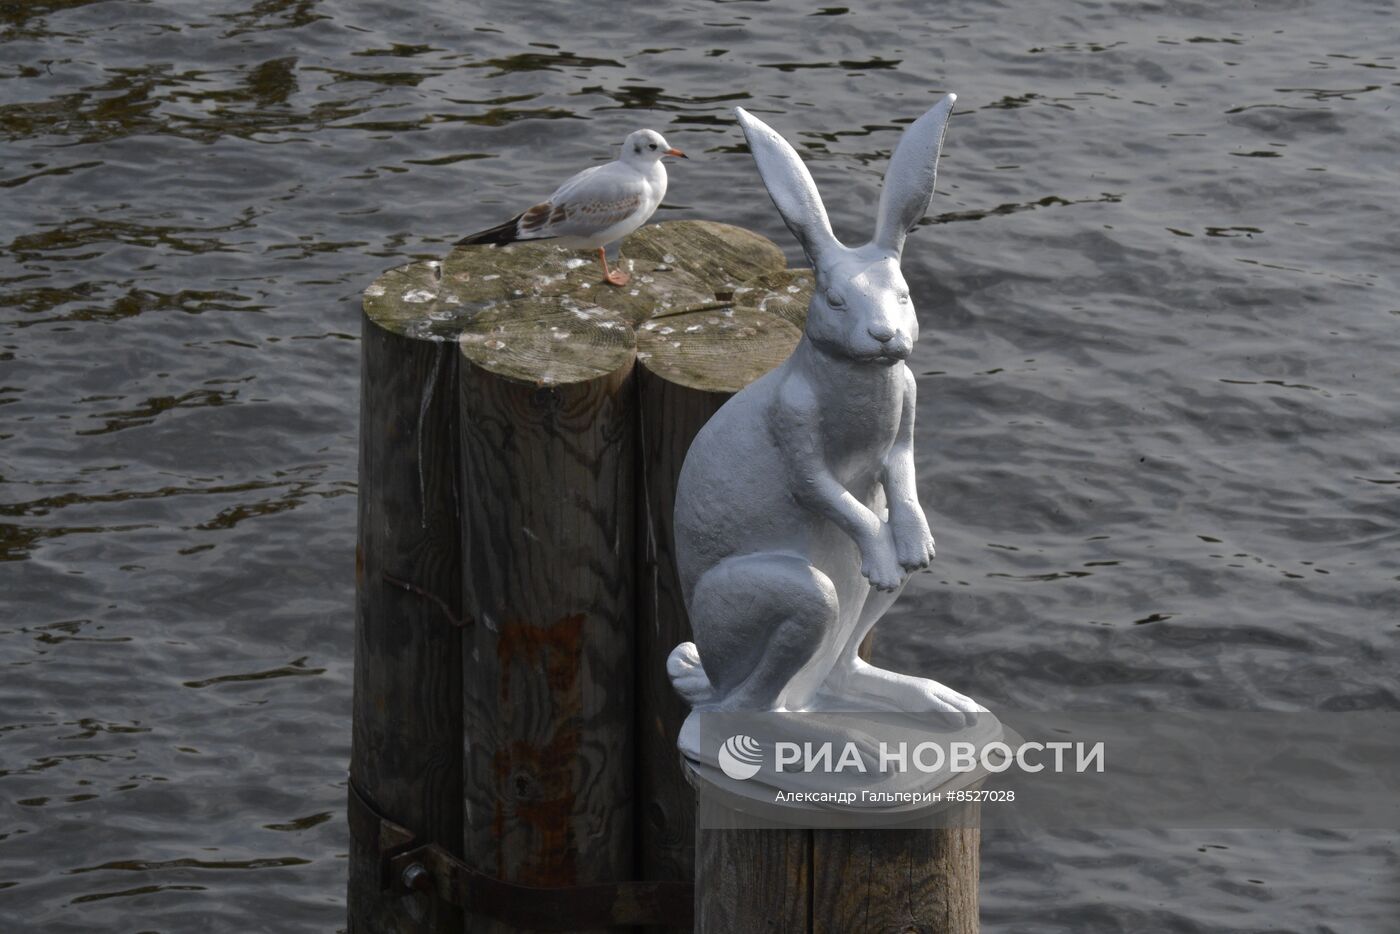 Возвращение памятника зайцу Арсению после реставрации к Петропавловской крепости в Петербурге